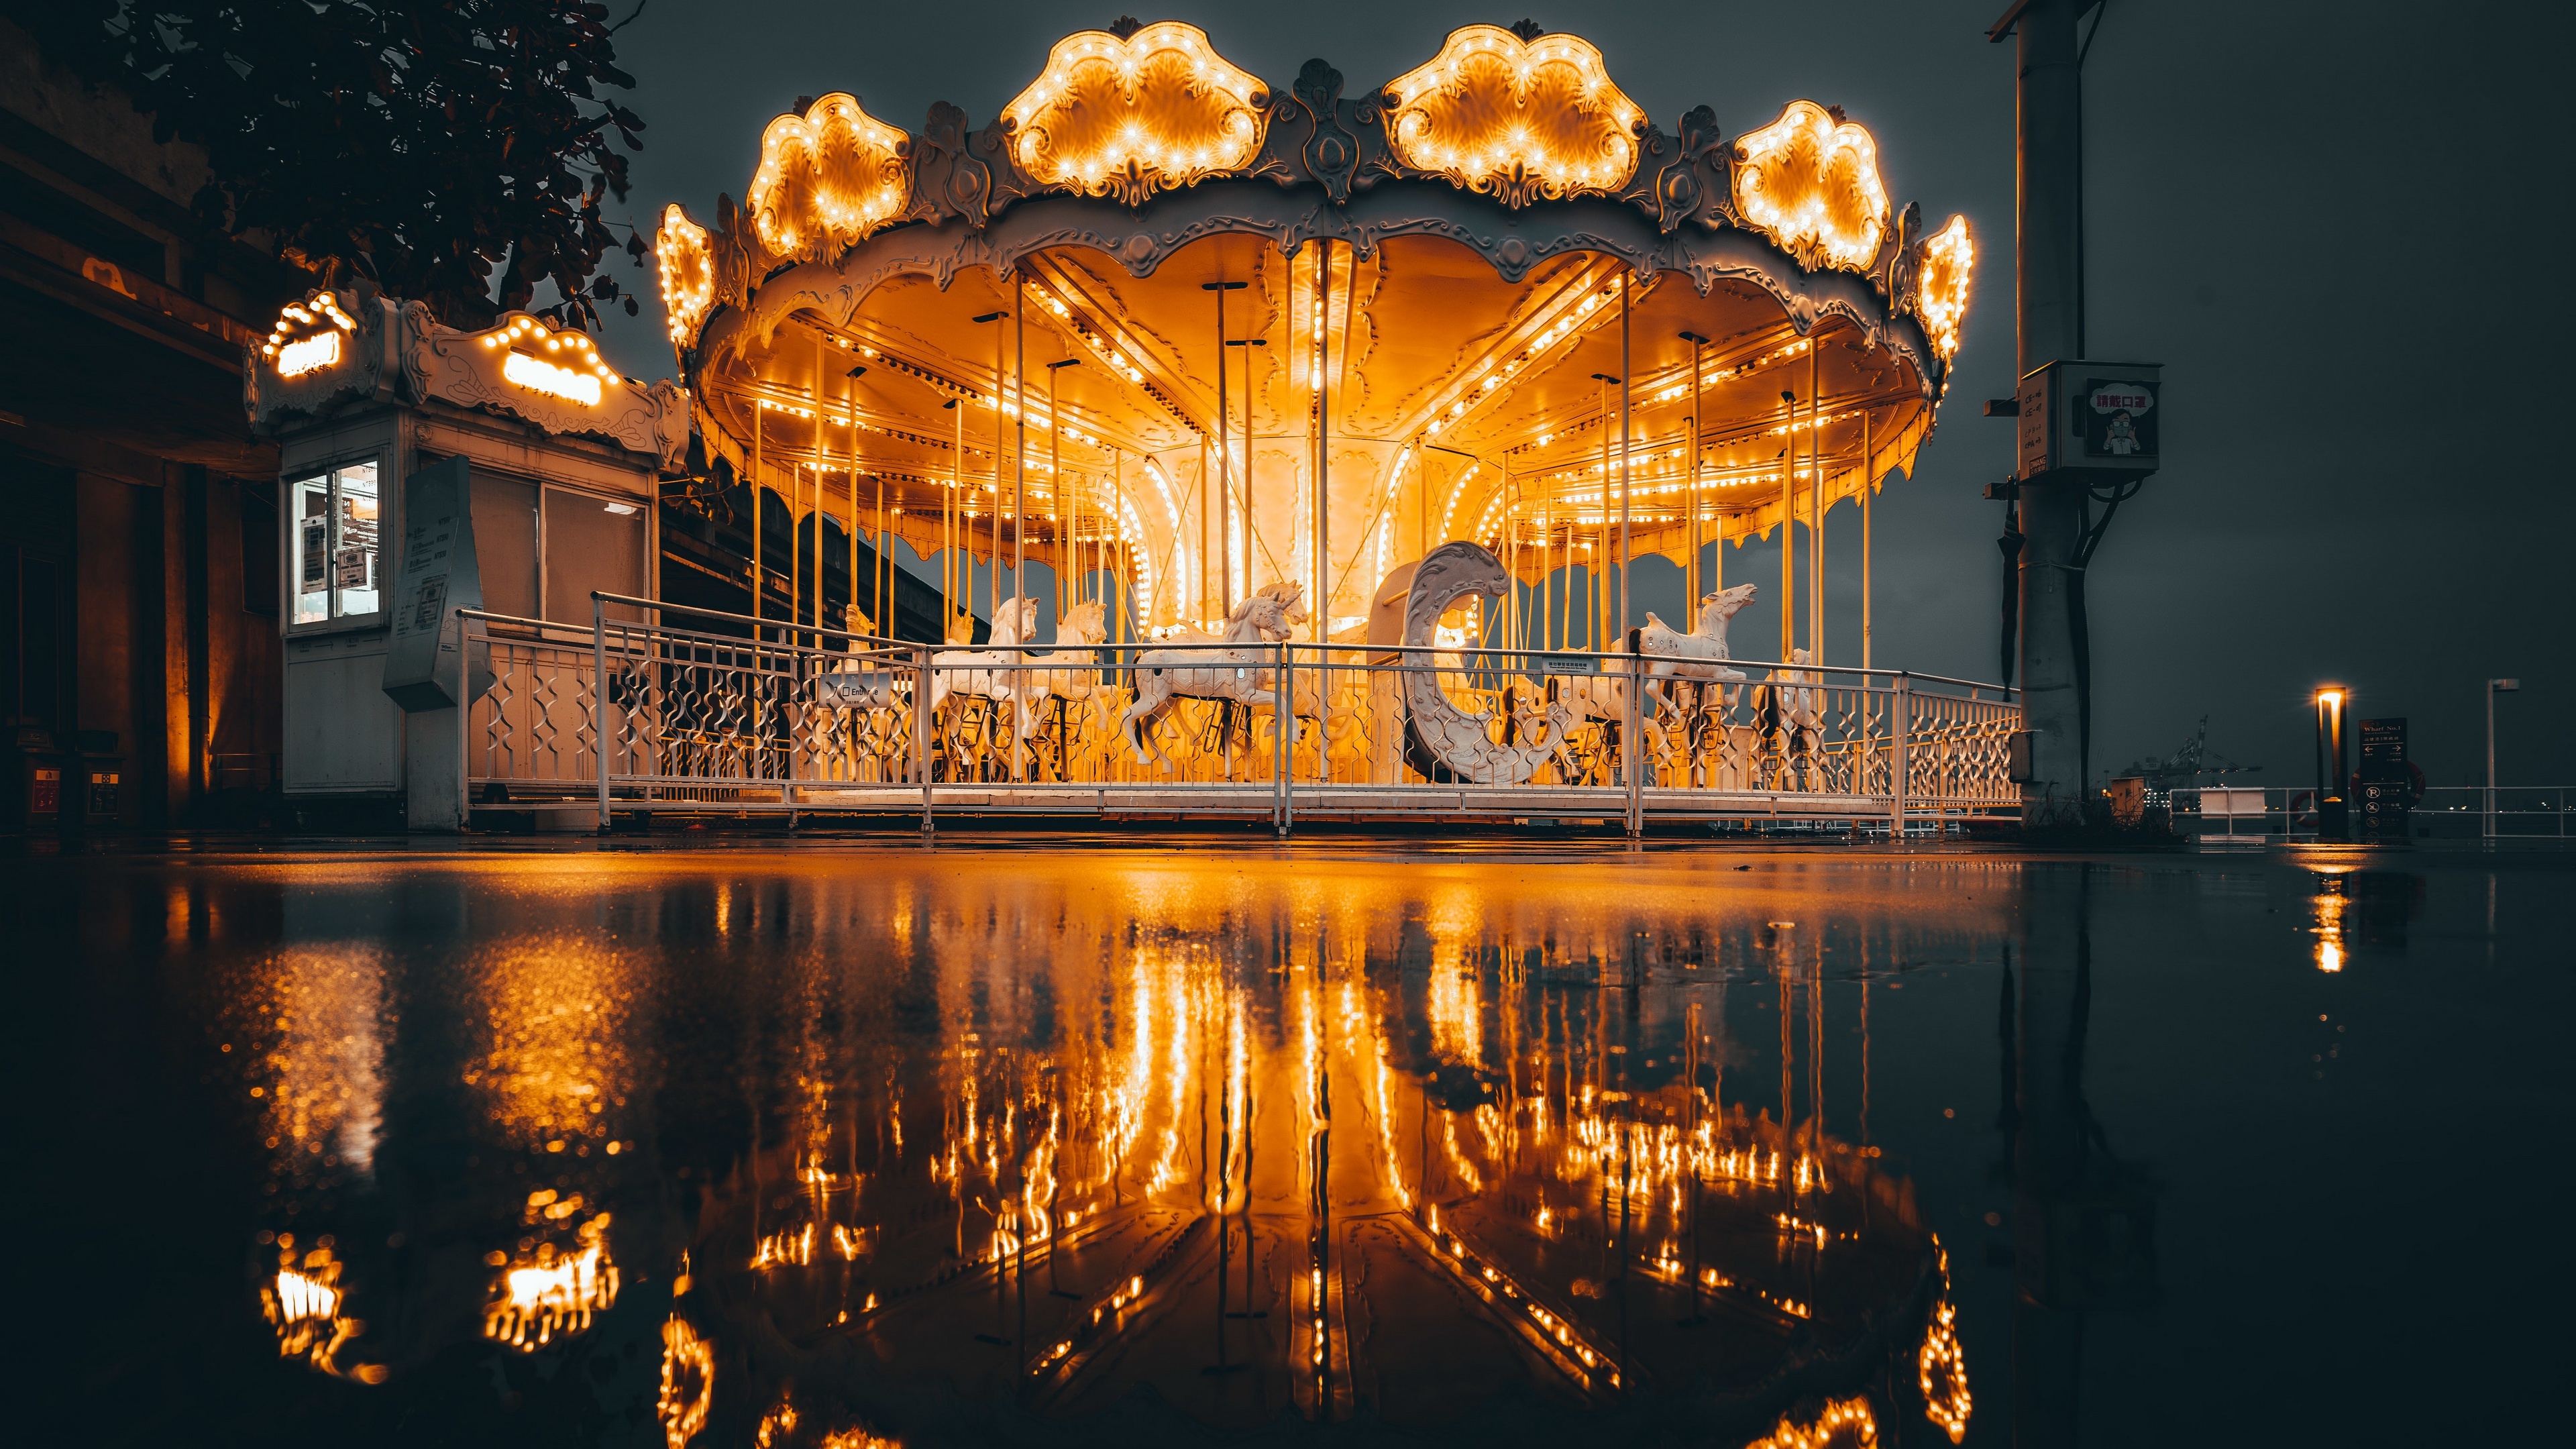 Merry-go-round, Carousel, 4K Ultra wallpaper, 3840x2160 4K Desktop